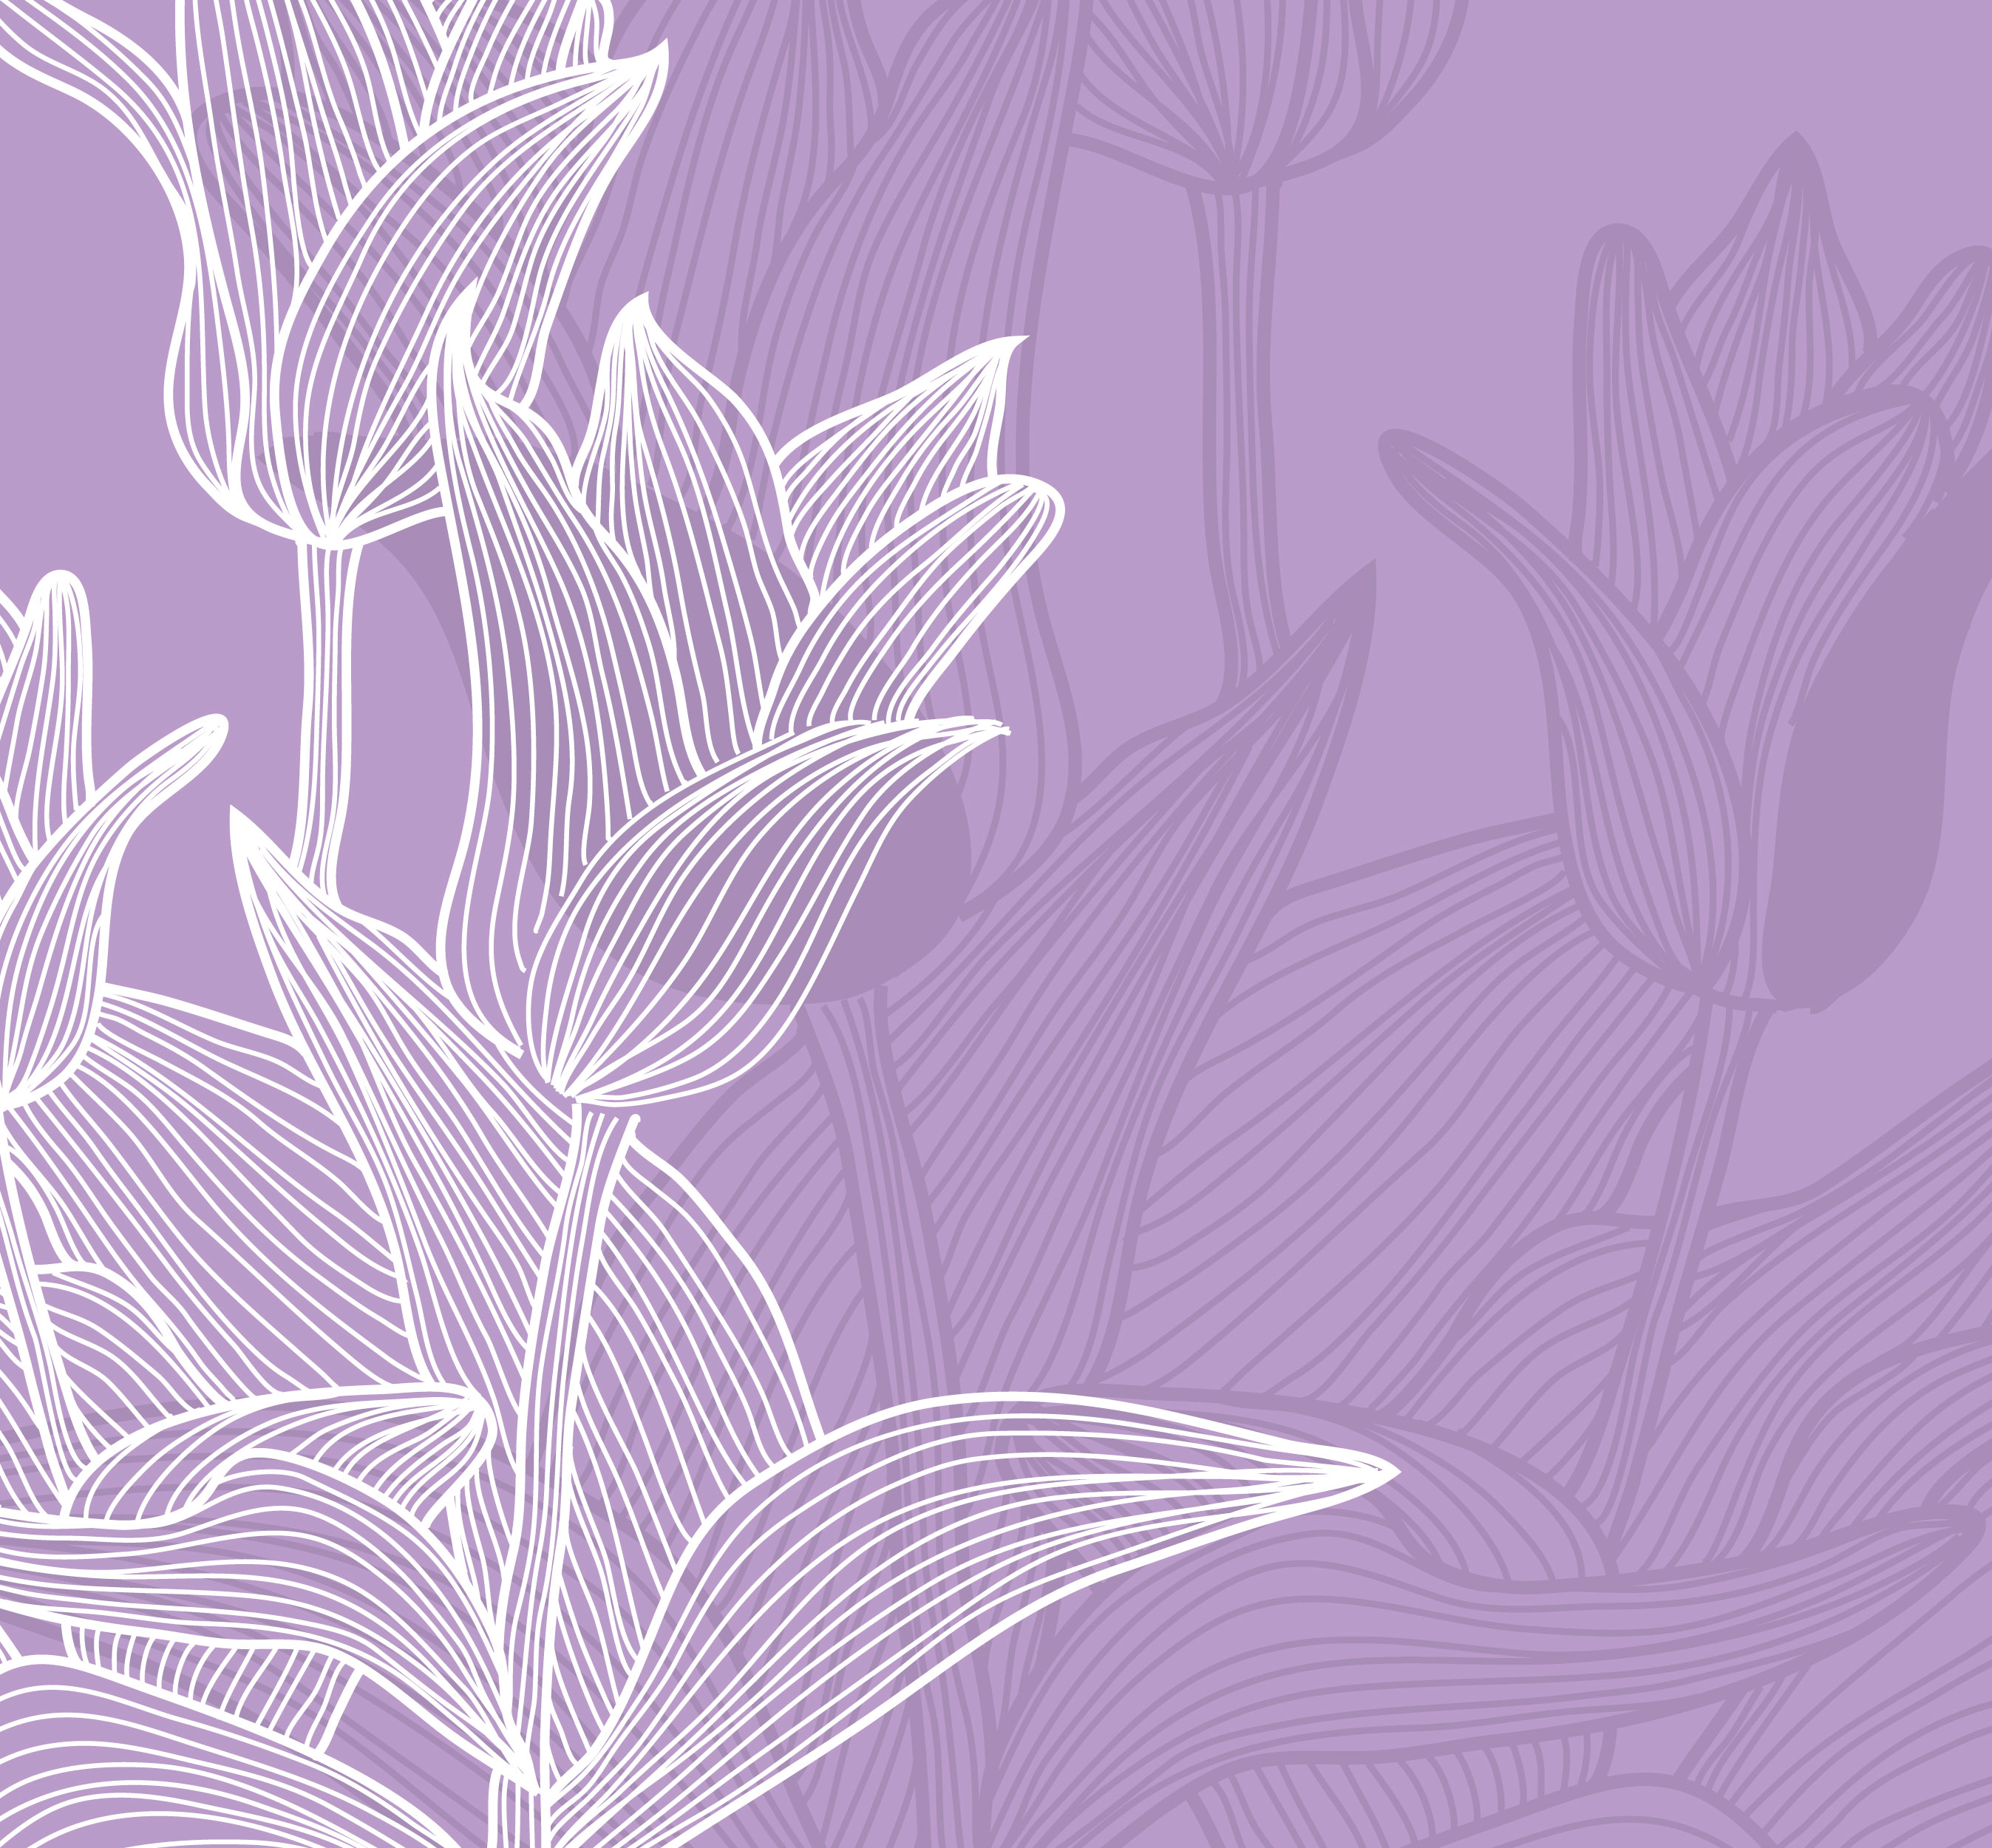 紫色の花のイラスト フリー素材 背景 壁紙no 452 紫 白抜き シルエット